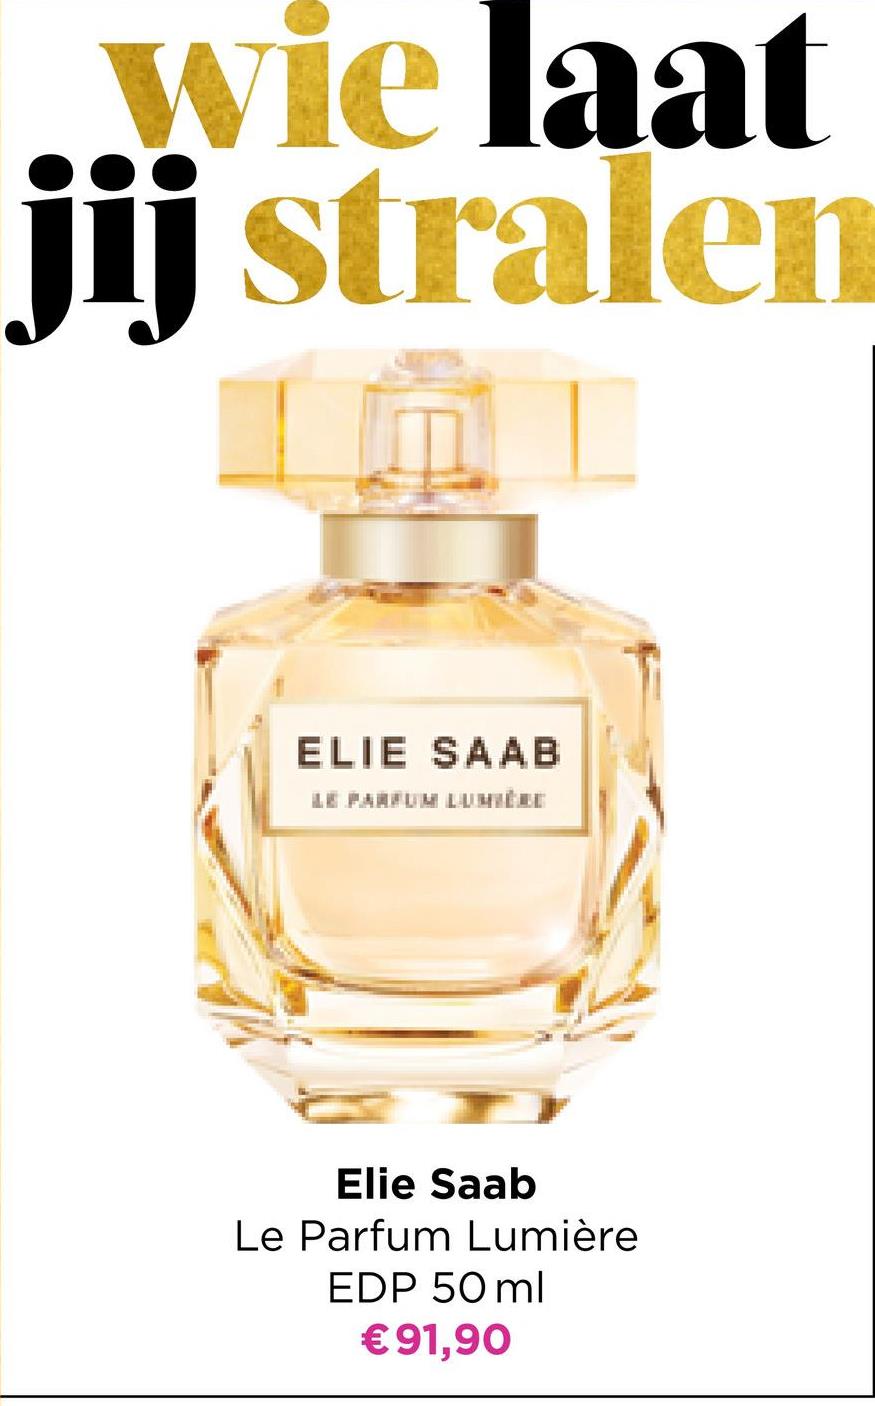 wie laat
jij stralen
IAL
01
ELIE SAAB
LE PARFUM LUMIÈRE
Elie Saab
Le Parfum Lumière
EDP 50ml
€91,90